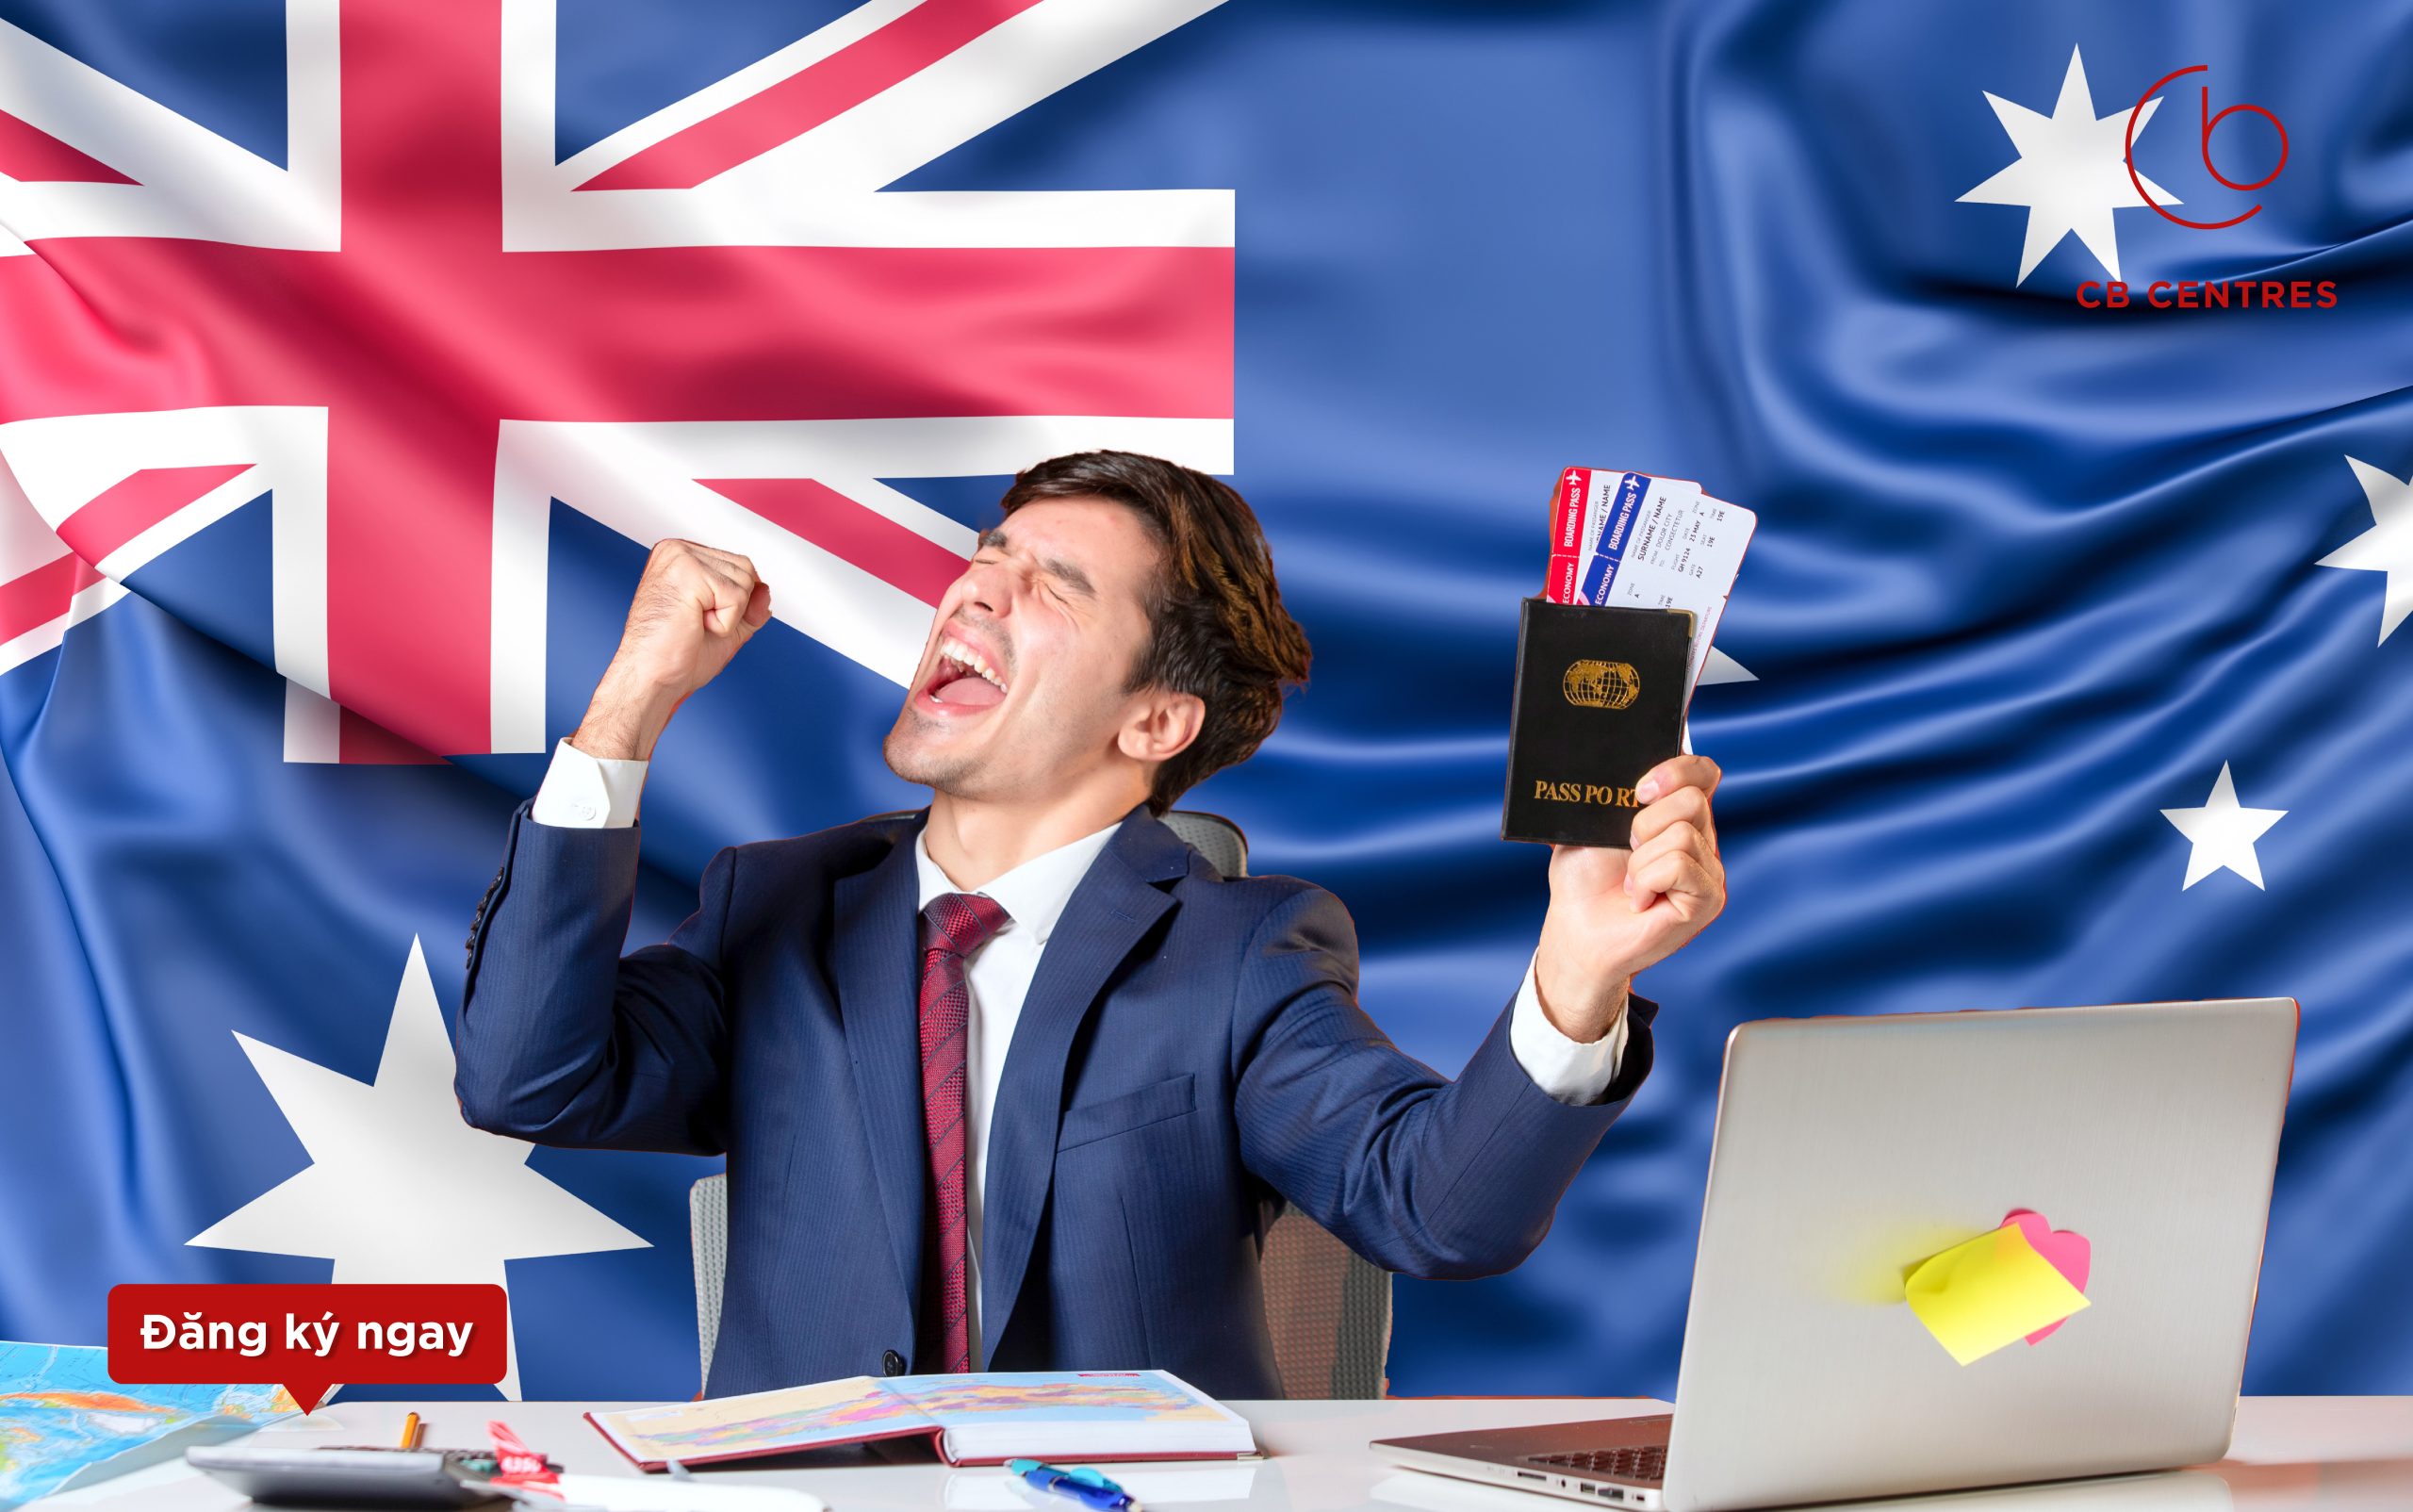 Visa 500 Úc giúp bạn có thể lưu trú và học tập tại Úc